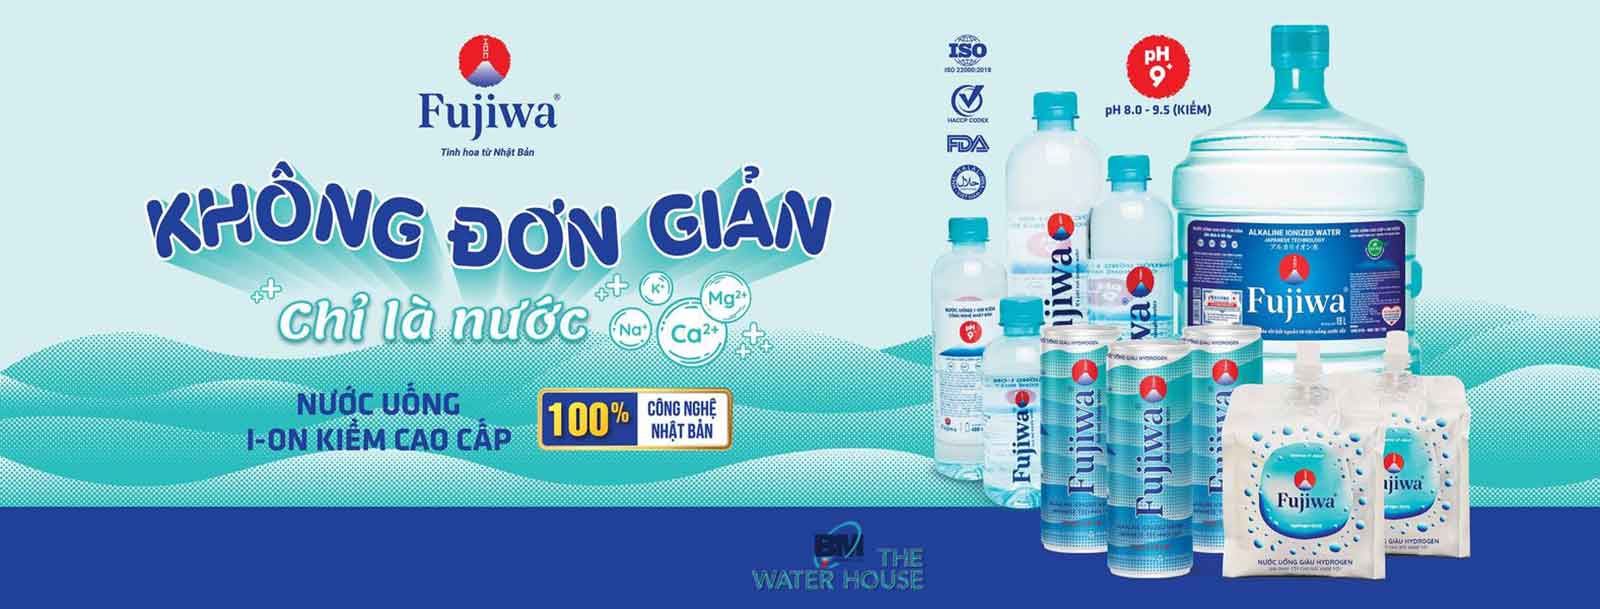 Đổi nước đem đến thương hiệu Fujiwa